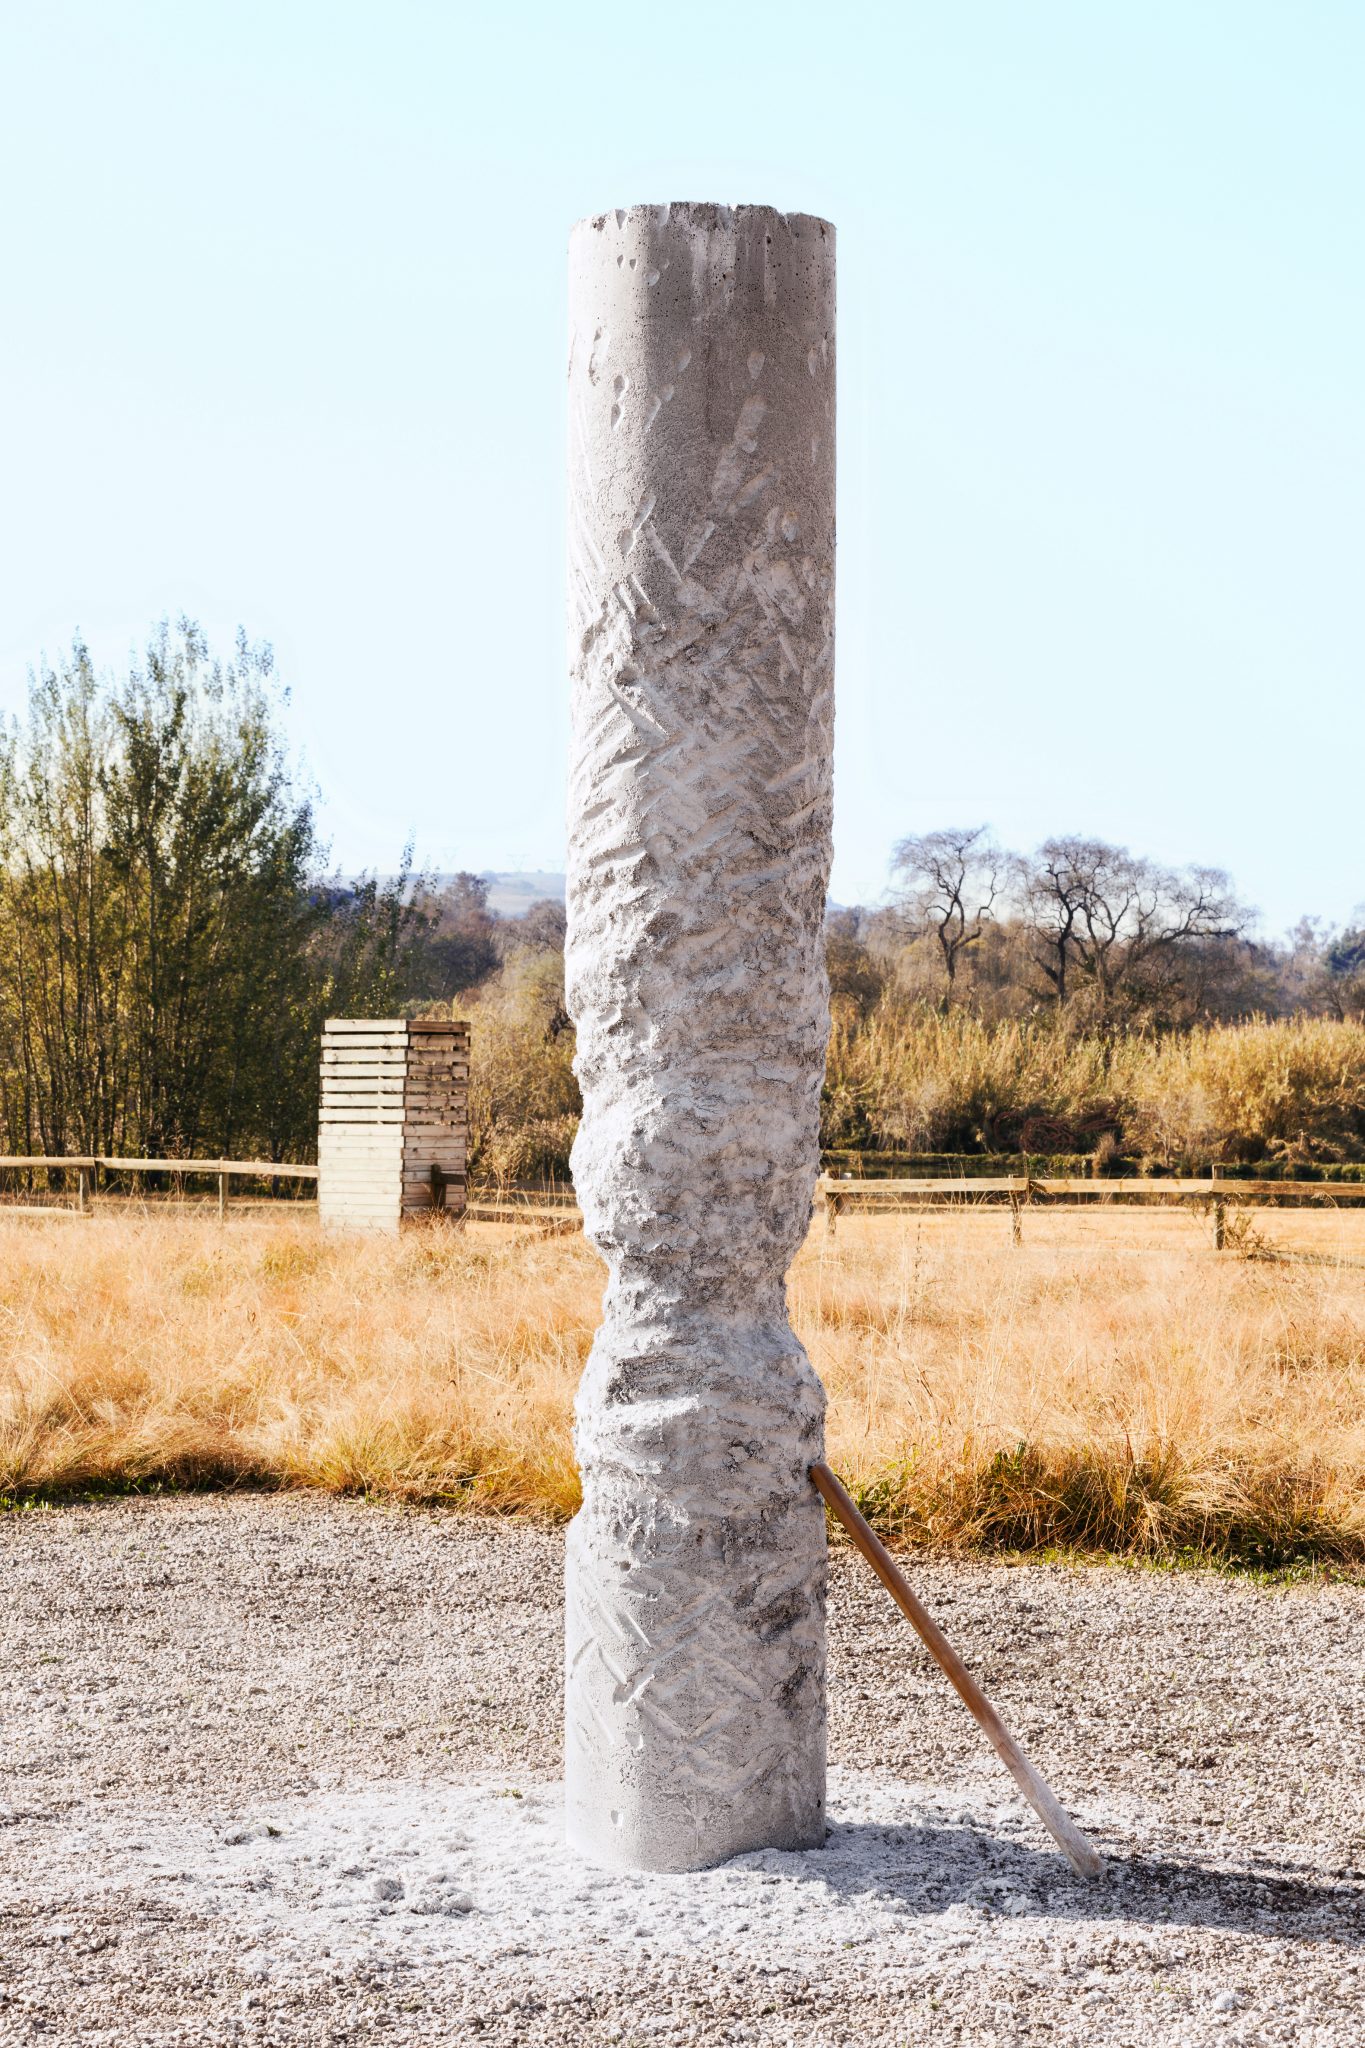 02_The Cool Couple_Turborage, 2017, installazione, 3 pilastri in cemento e perlite _ 3 mazze di legno, Nirox Foundation, Krugersdorp, South Africa